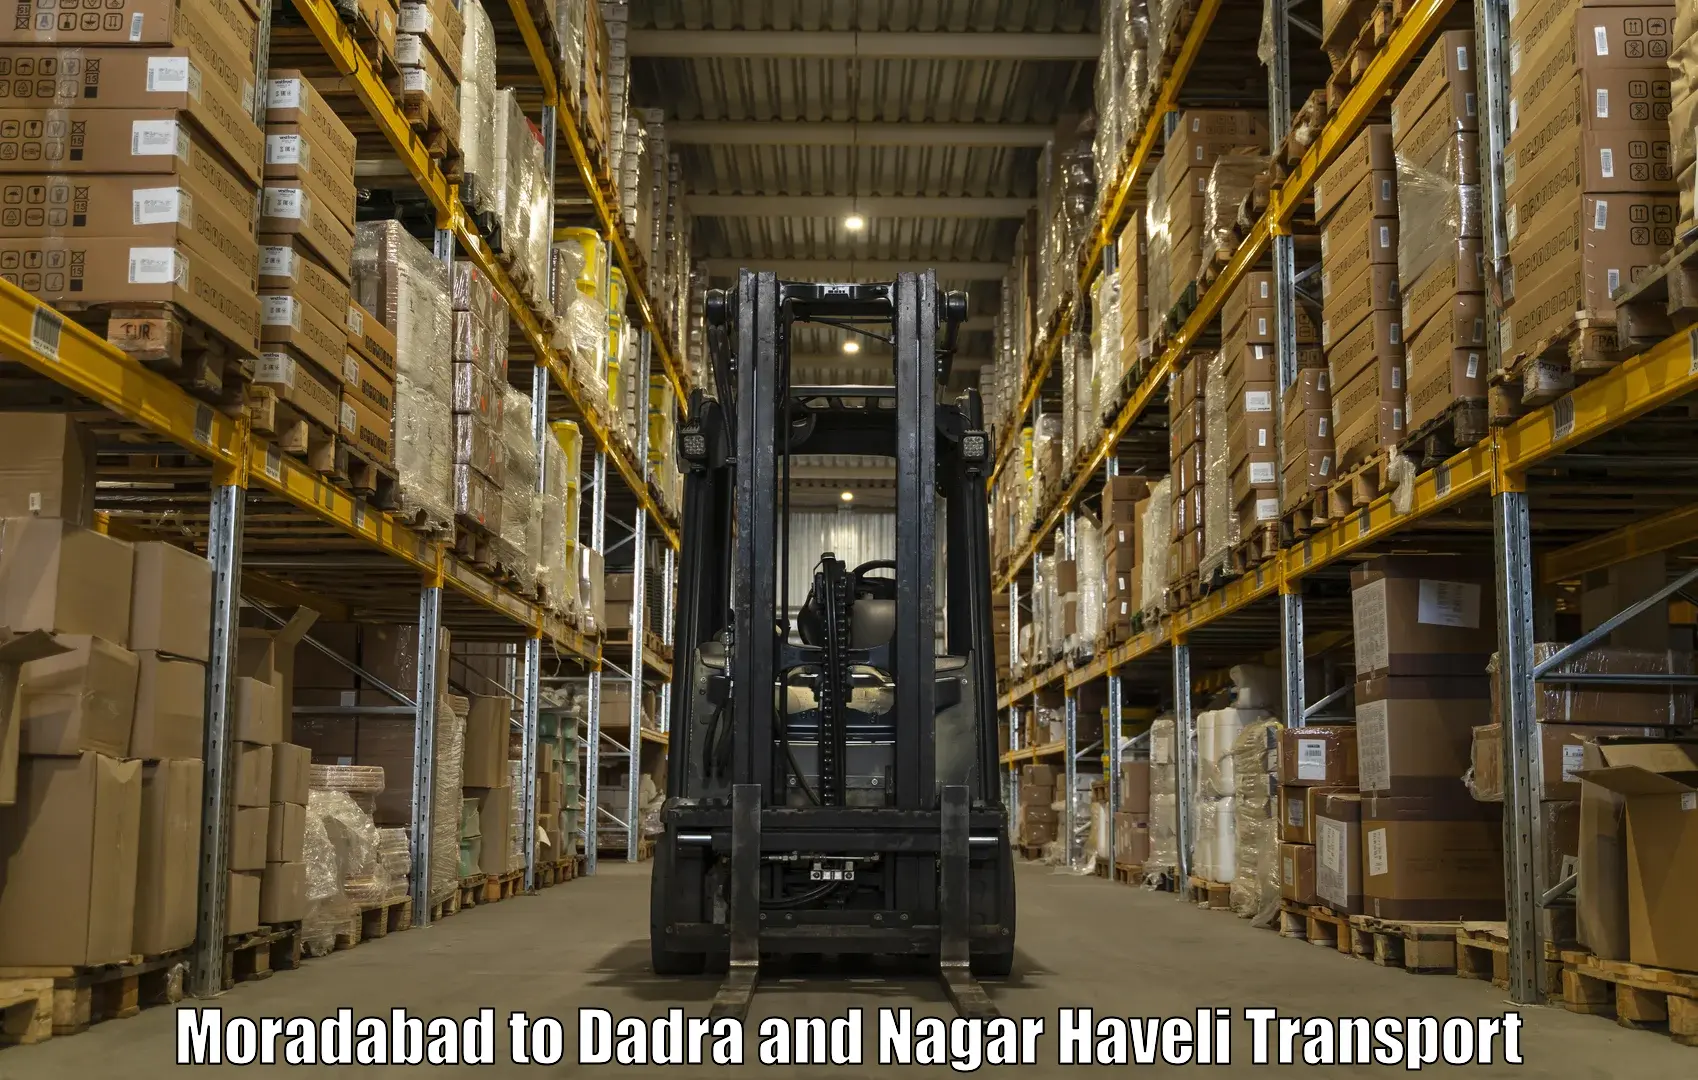 Cargo transportation services Moradabad to Silvassa